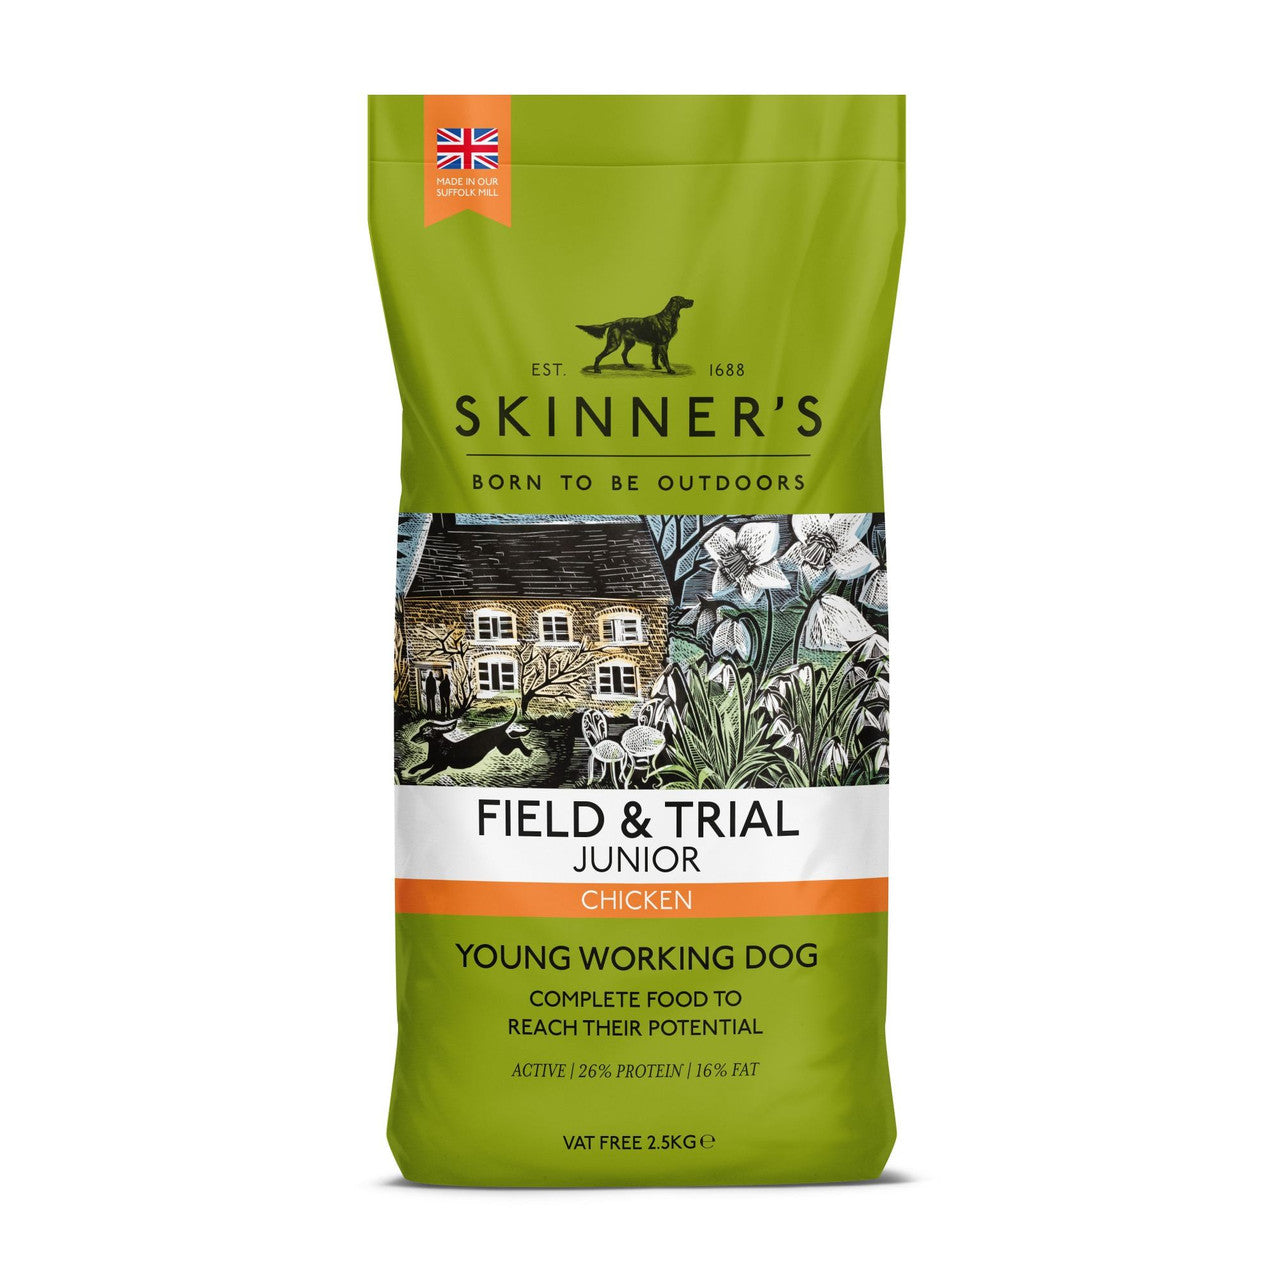 Skinners Field & Trial Junior Chicken 15kg - Dry Dog Food